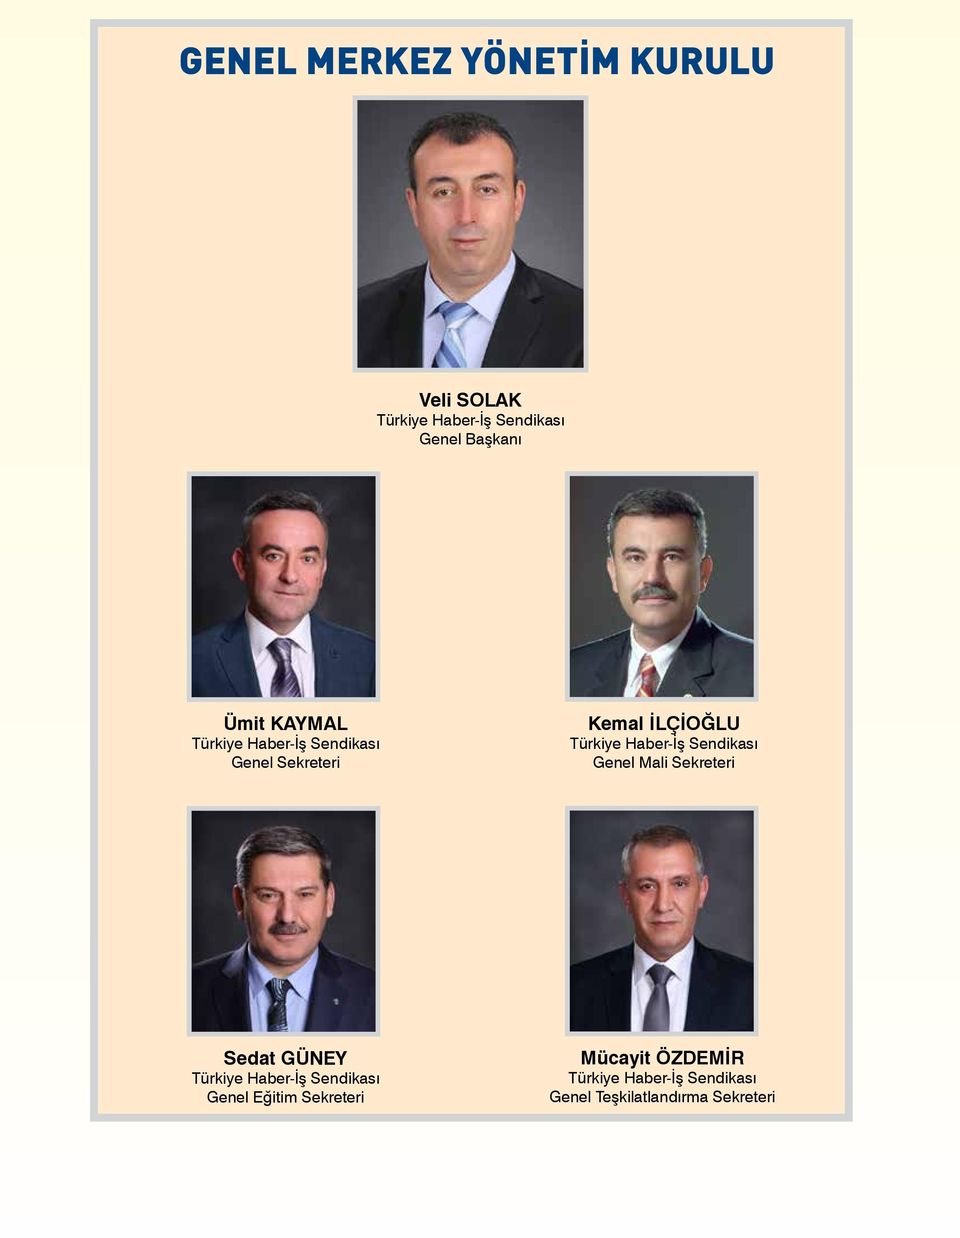 Mali Sekreteri Sedat GÜNEY Türkiye Haber-İş Sendikası Genel Eğitim Sekreteri Mücayit